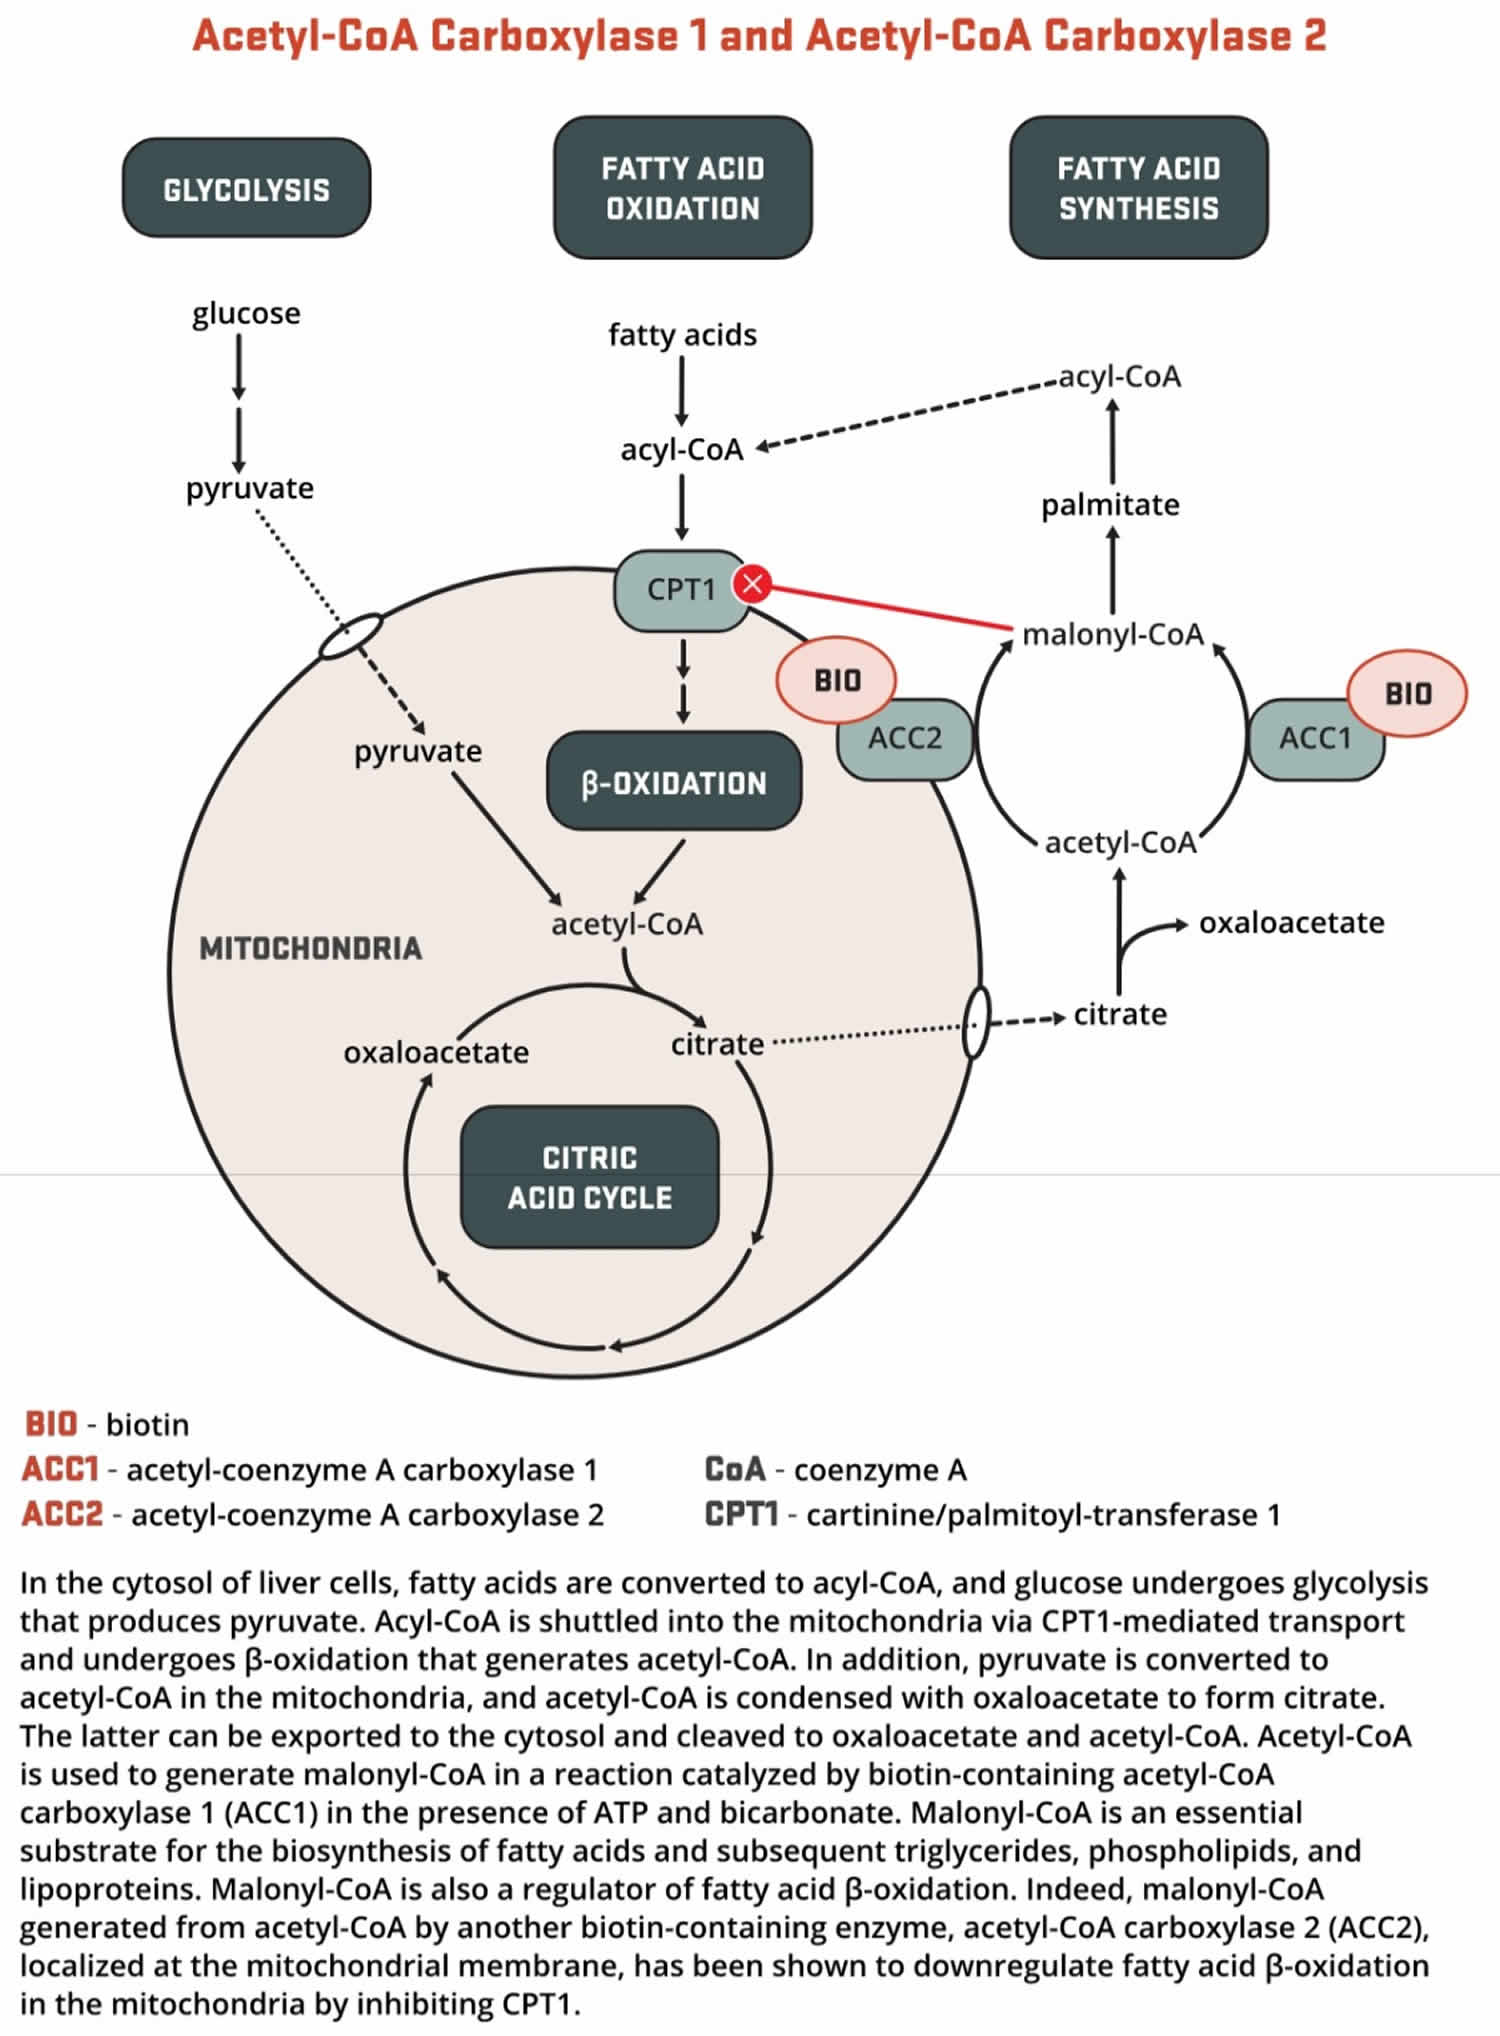 Biotin as enzyme cofactor in gluconeogenesis